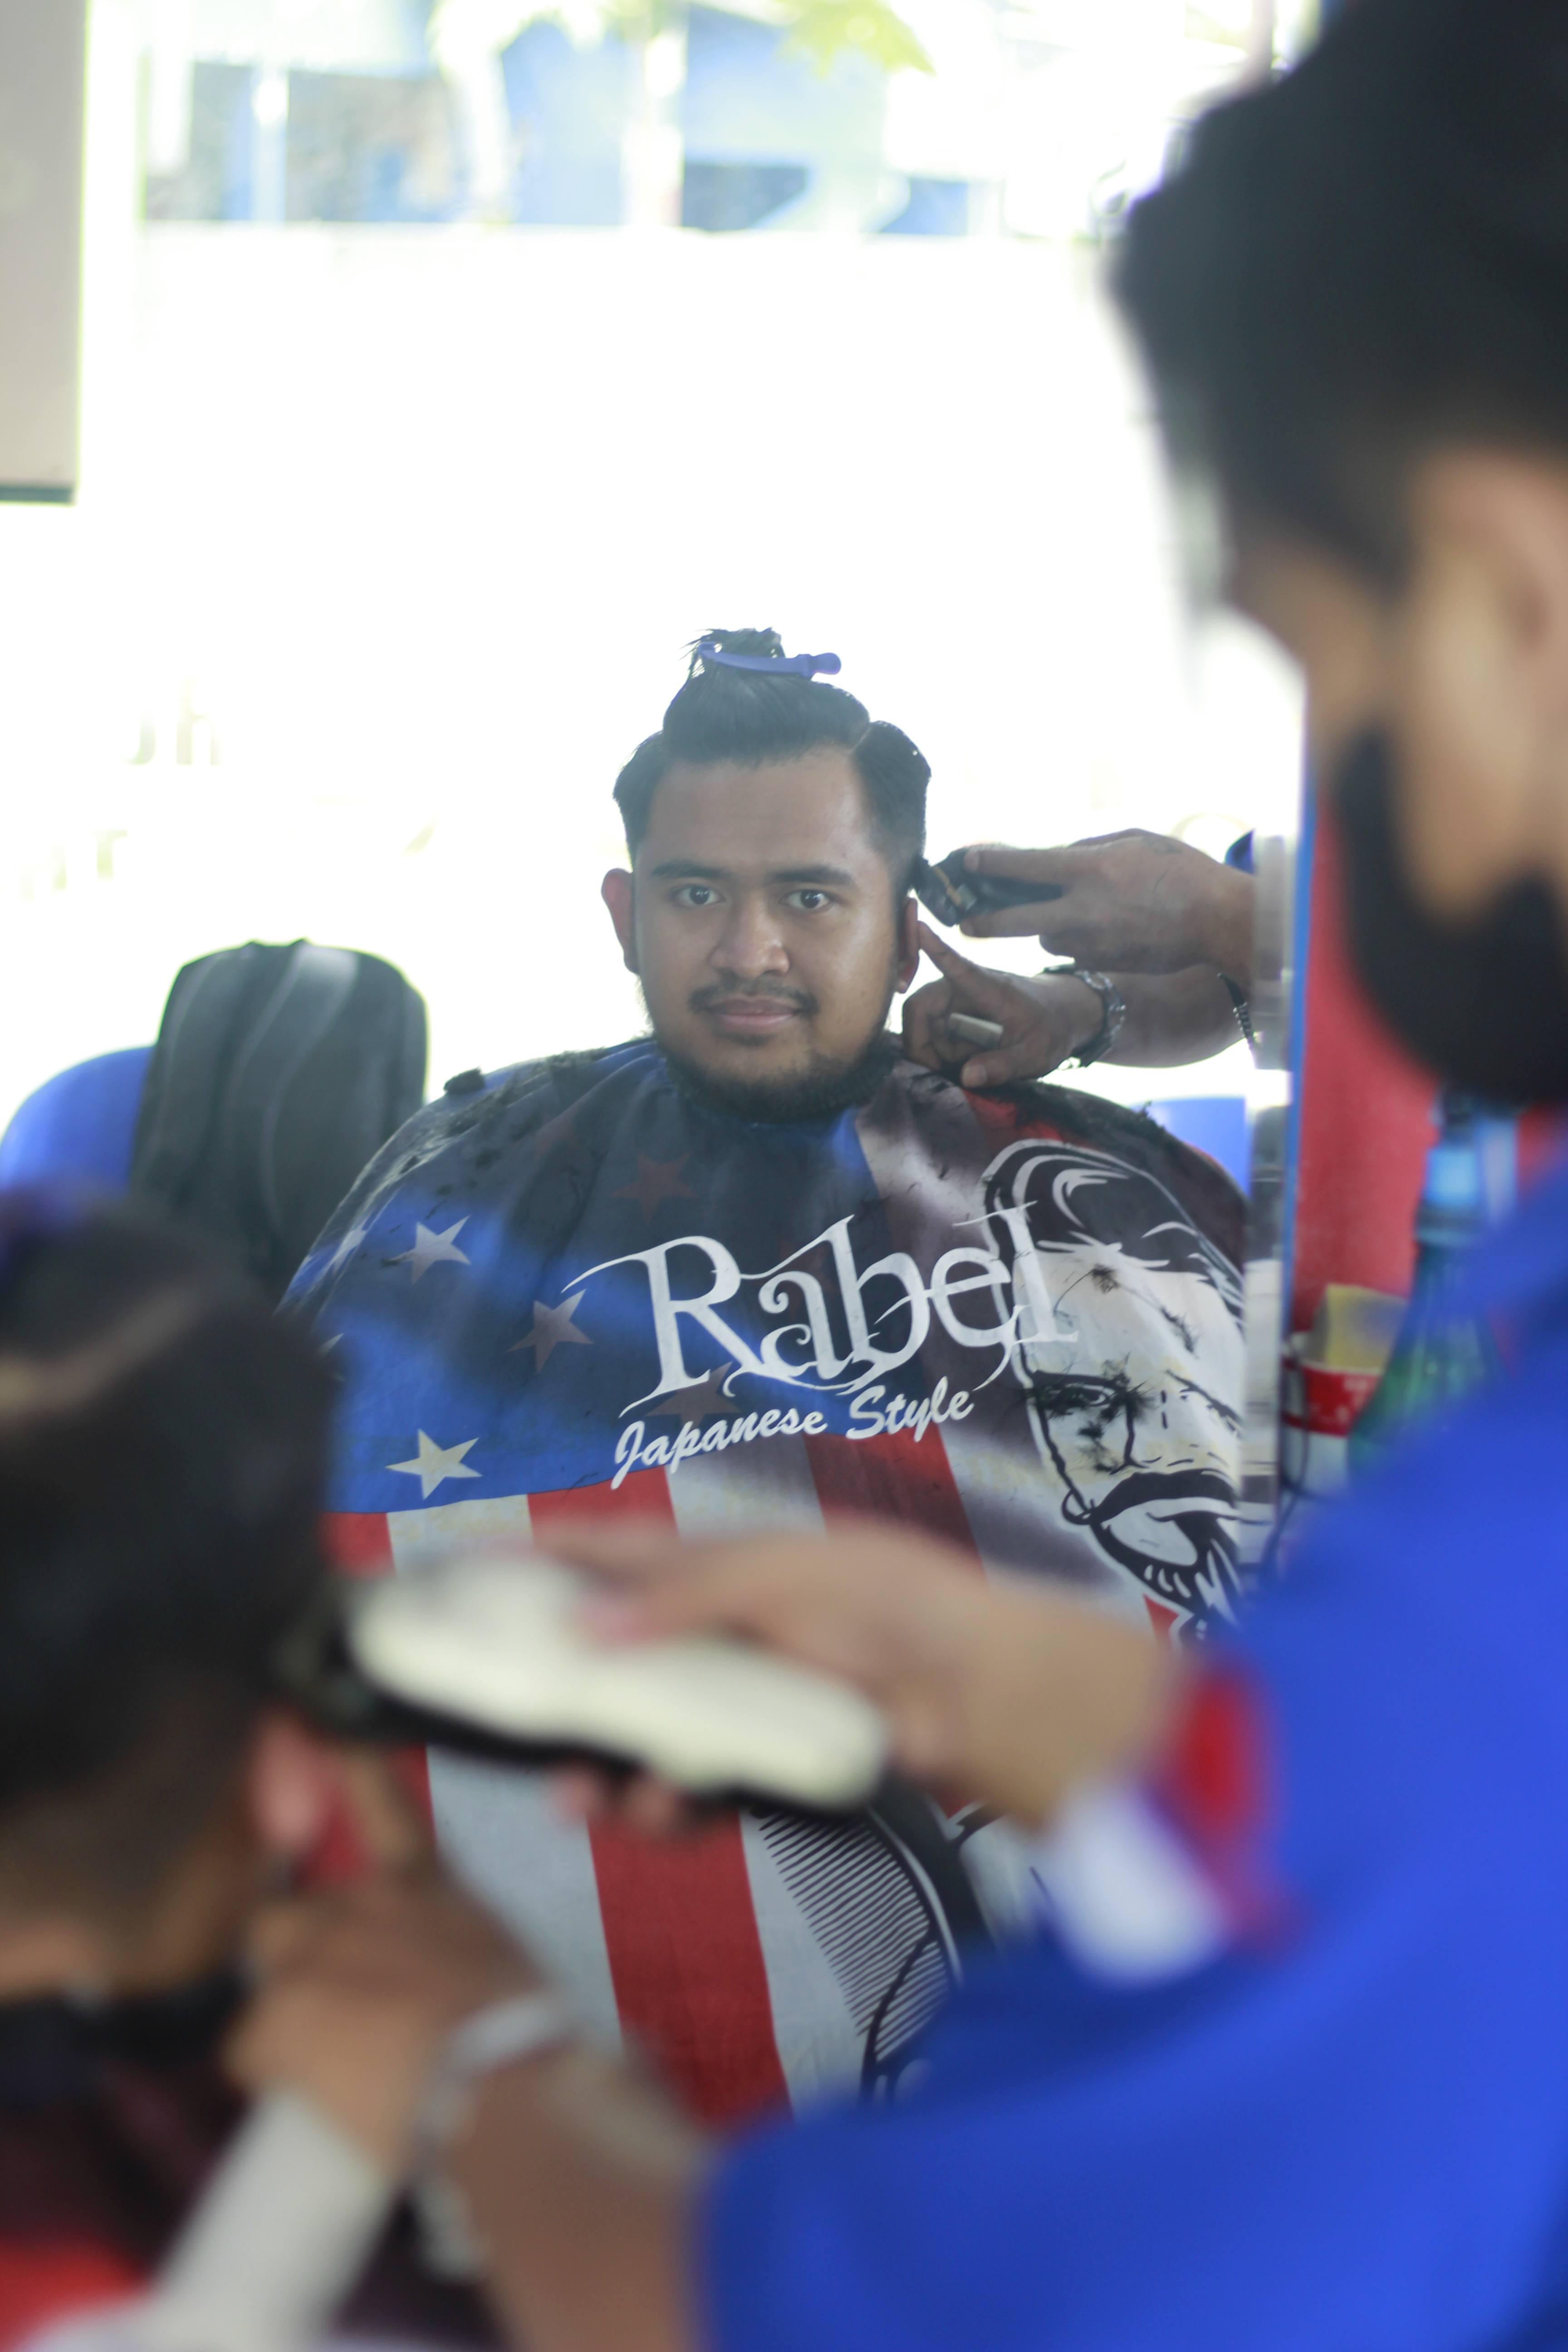 Harga Cukur Rambut Di Kelurahan Karangbesuki Profesional